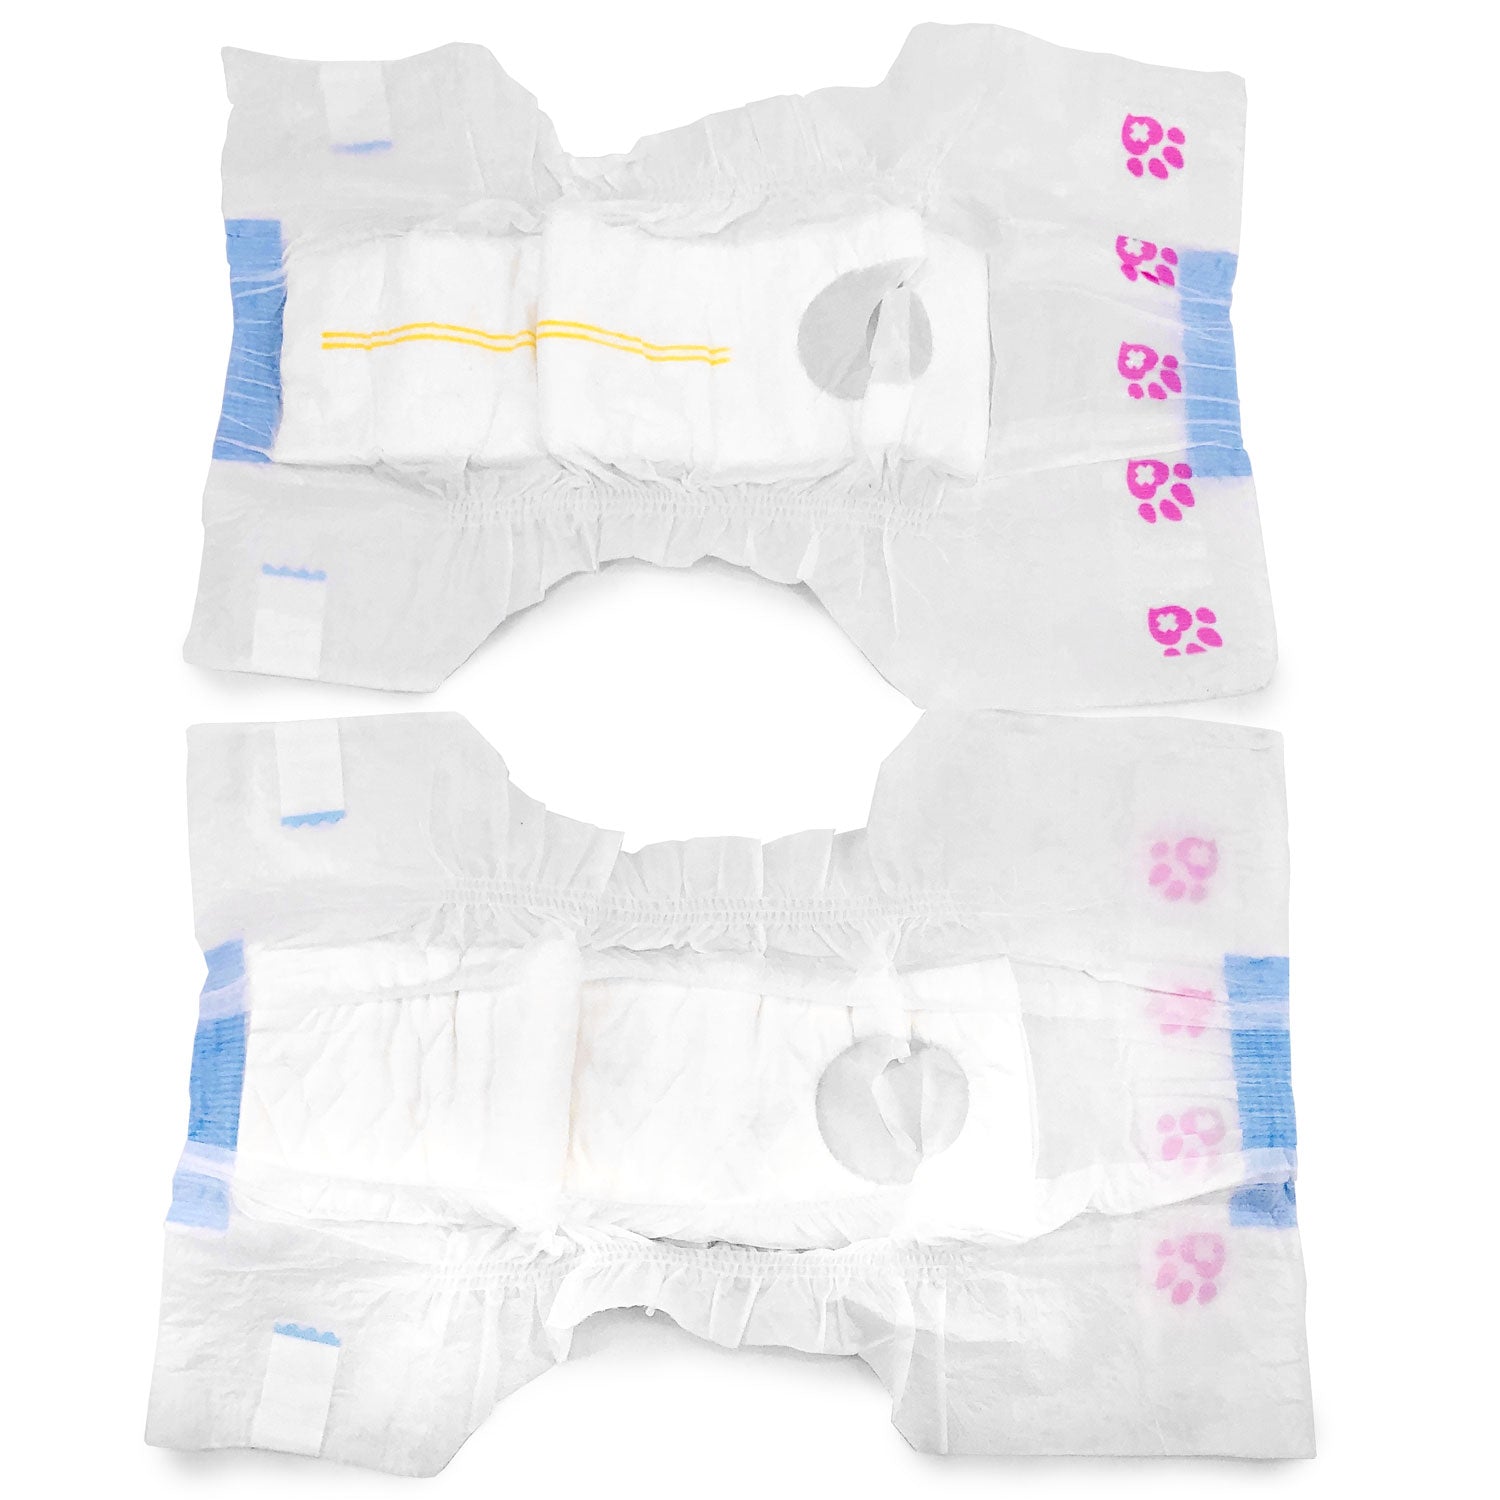 ValueFresh Female Dog Disposable Diapers, Medium, 144 Count